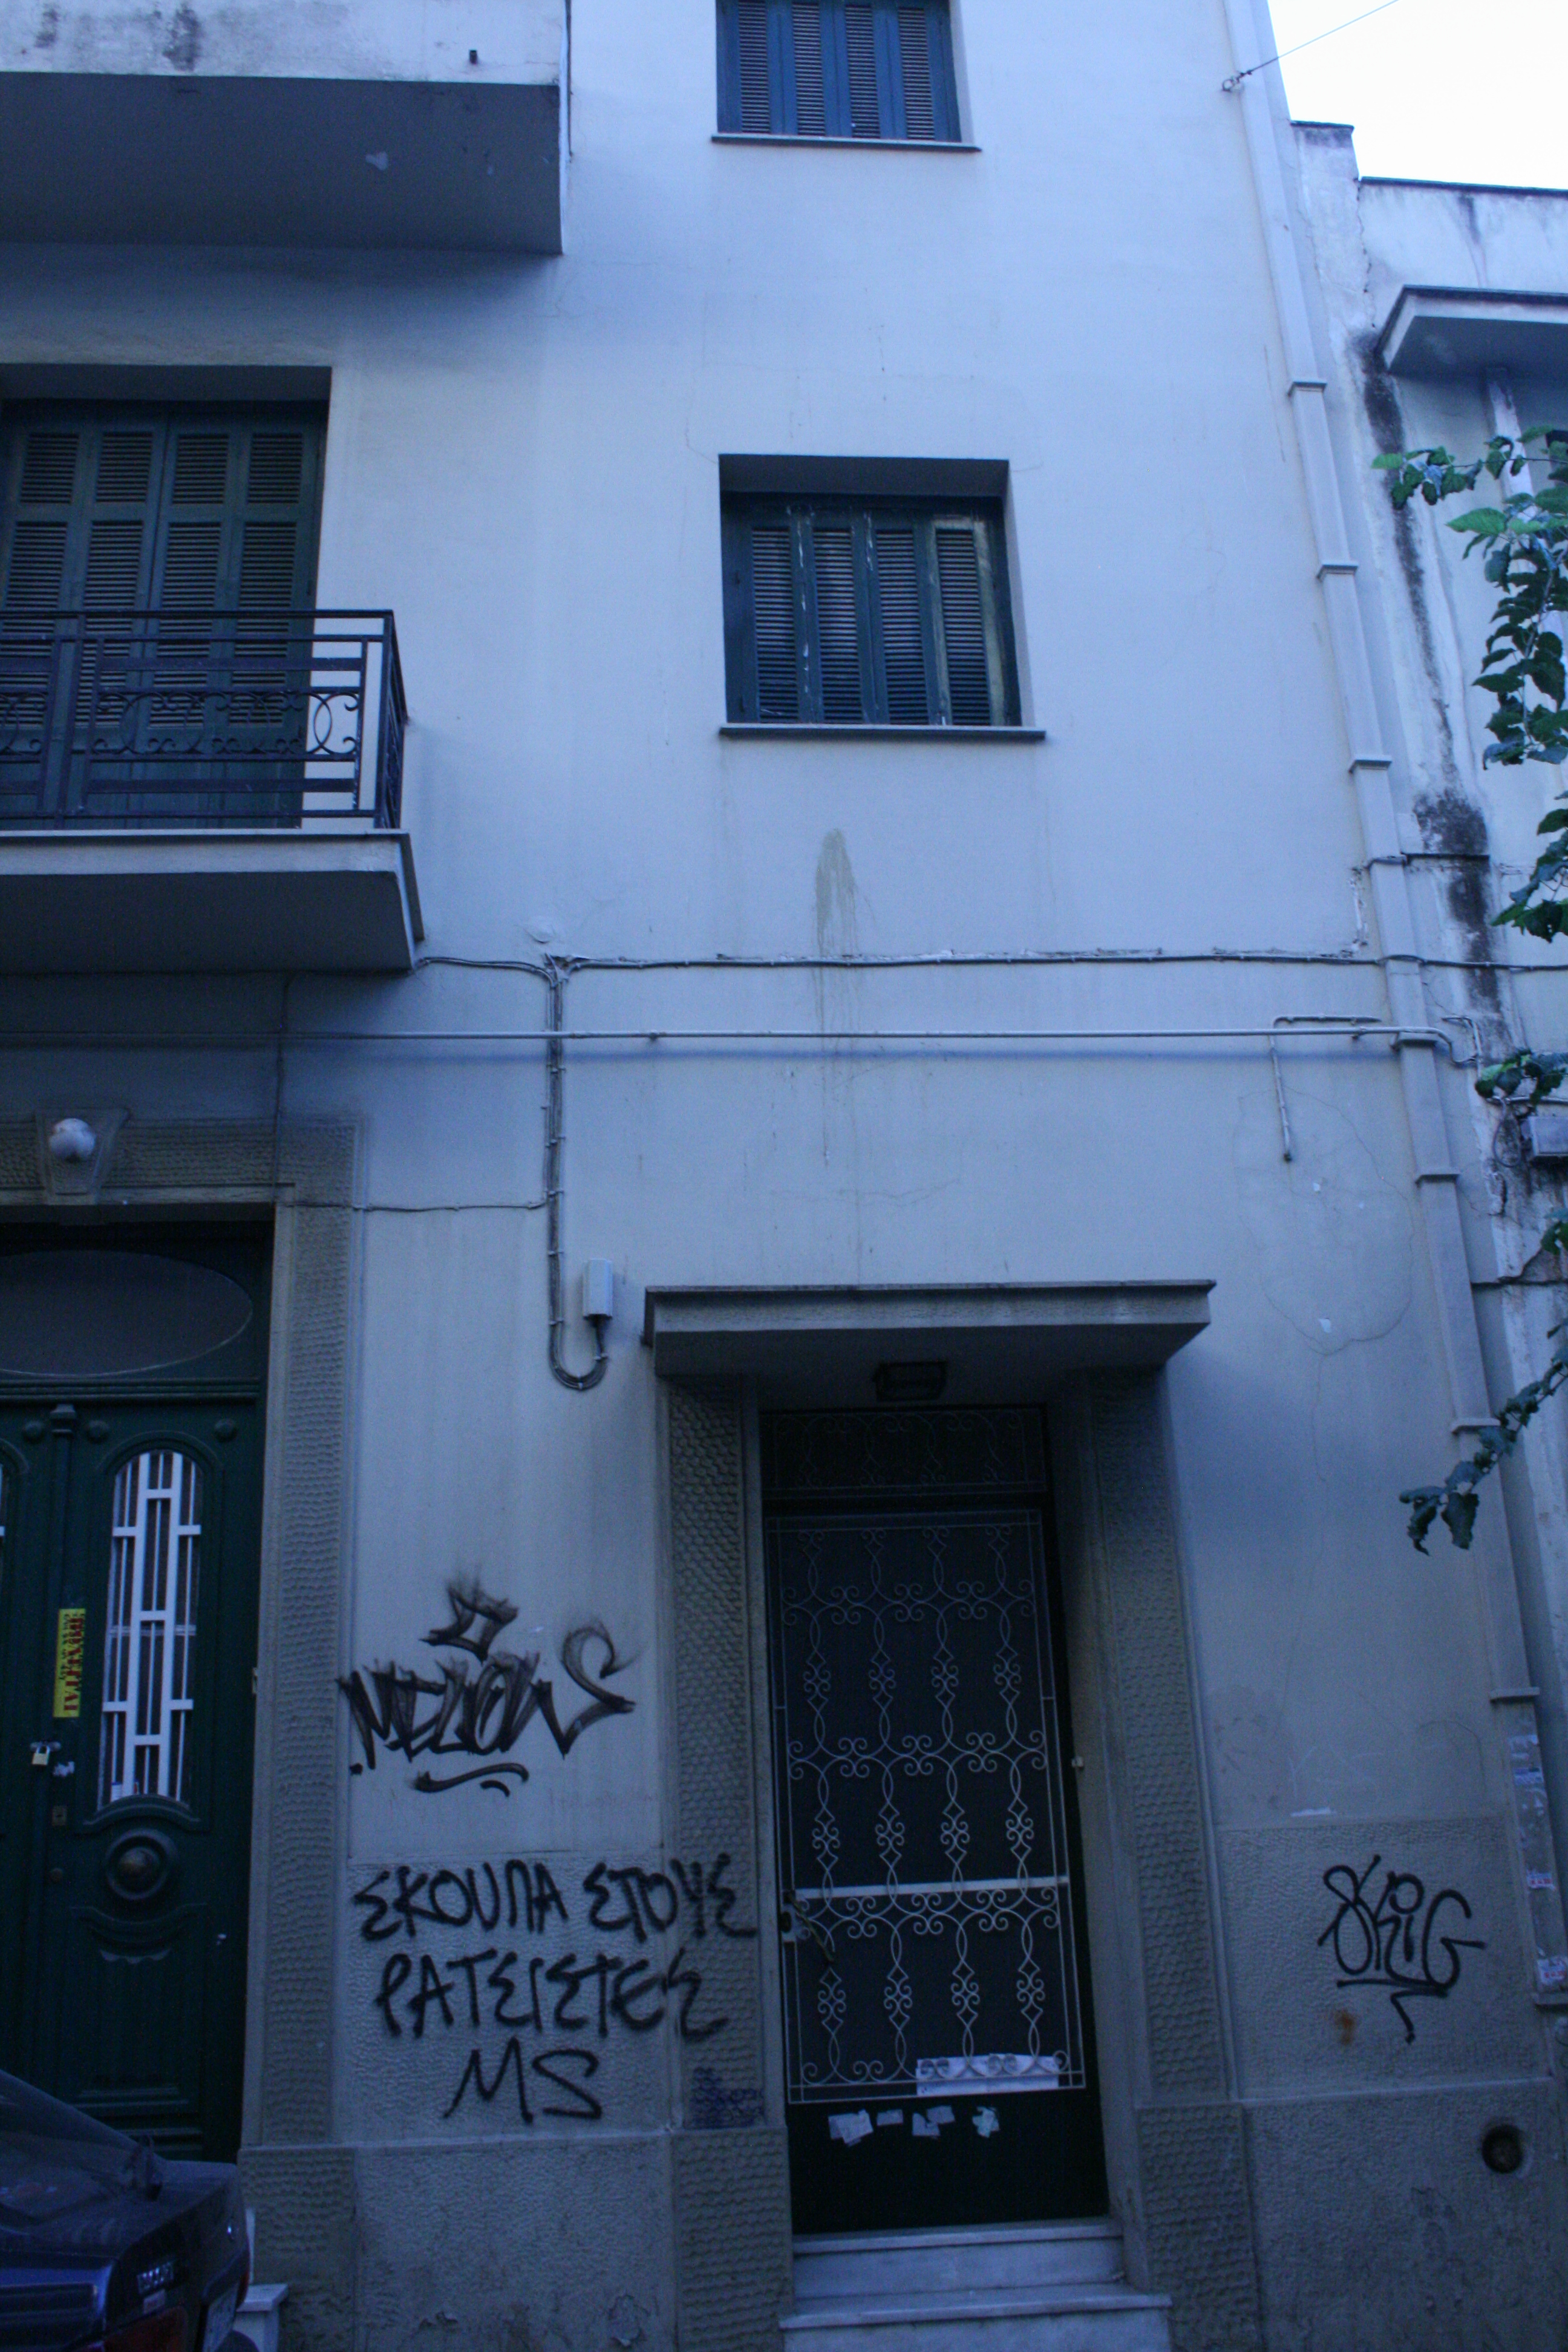 Secondary entrance door